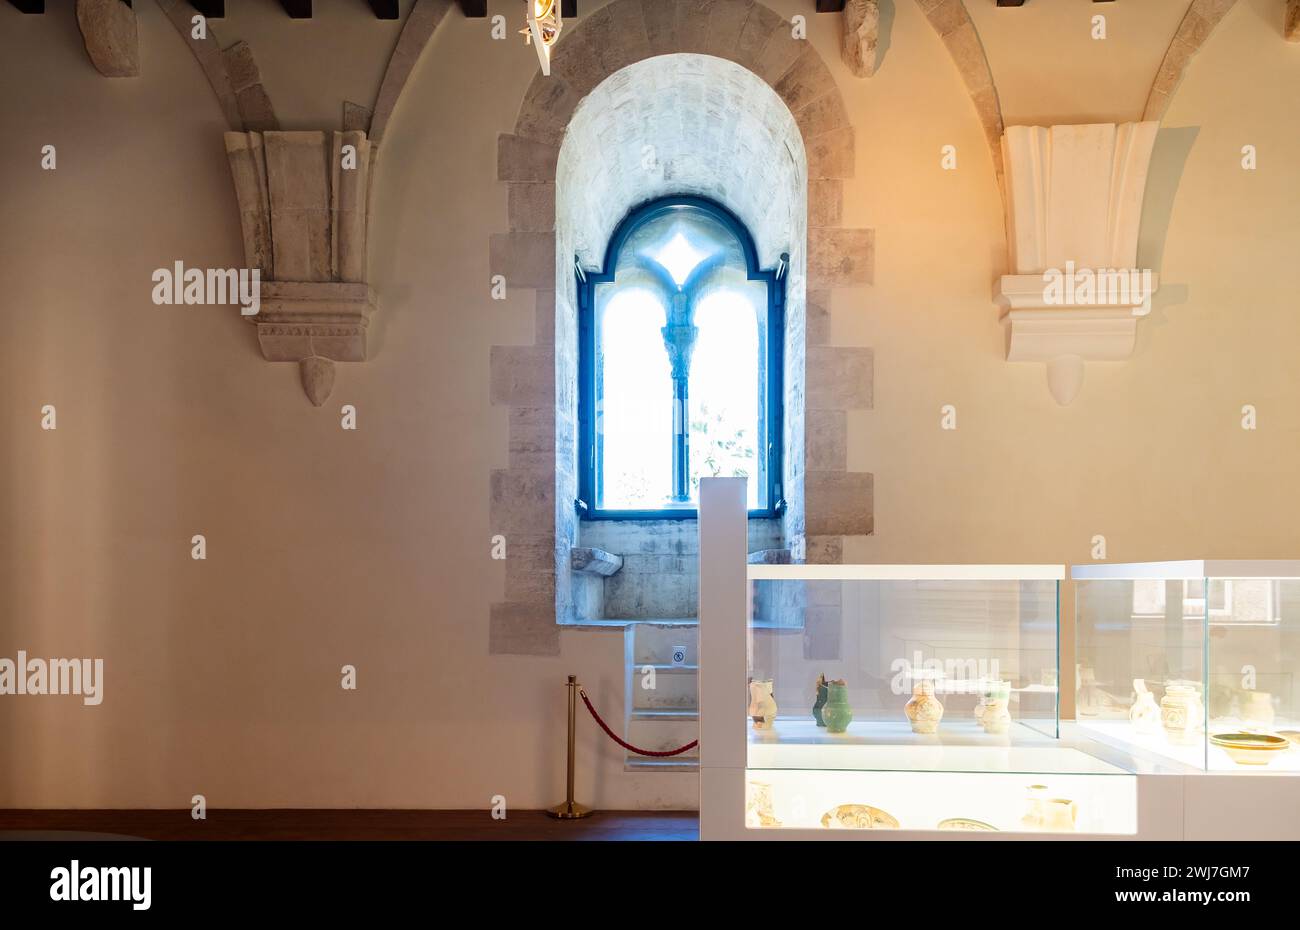 Salle d'exposition du château de Souabe normande ( Castello Normanno Svevo) dans le centre-ville historique de Bari, région des Pouilles, (Pouilles), sud de l'Italie Banque D'Images